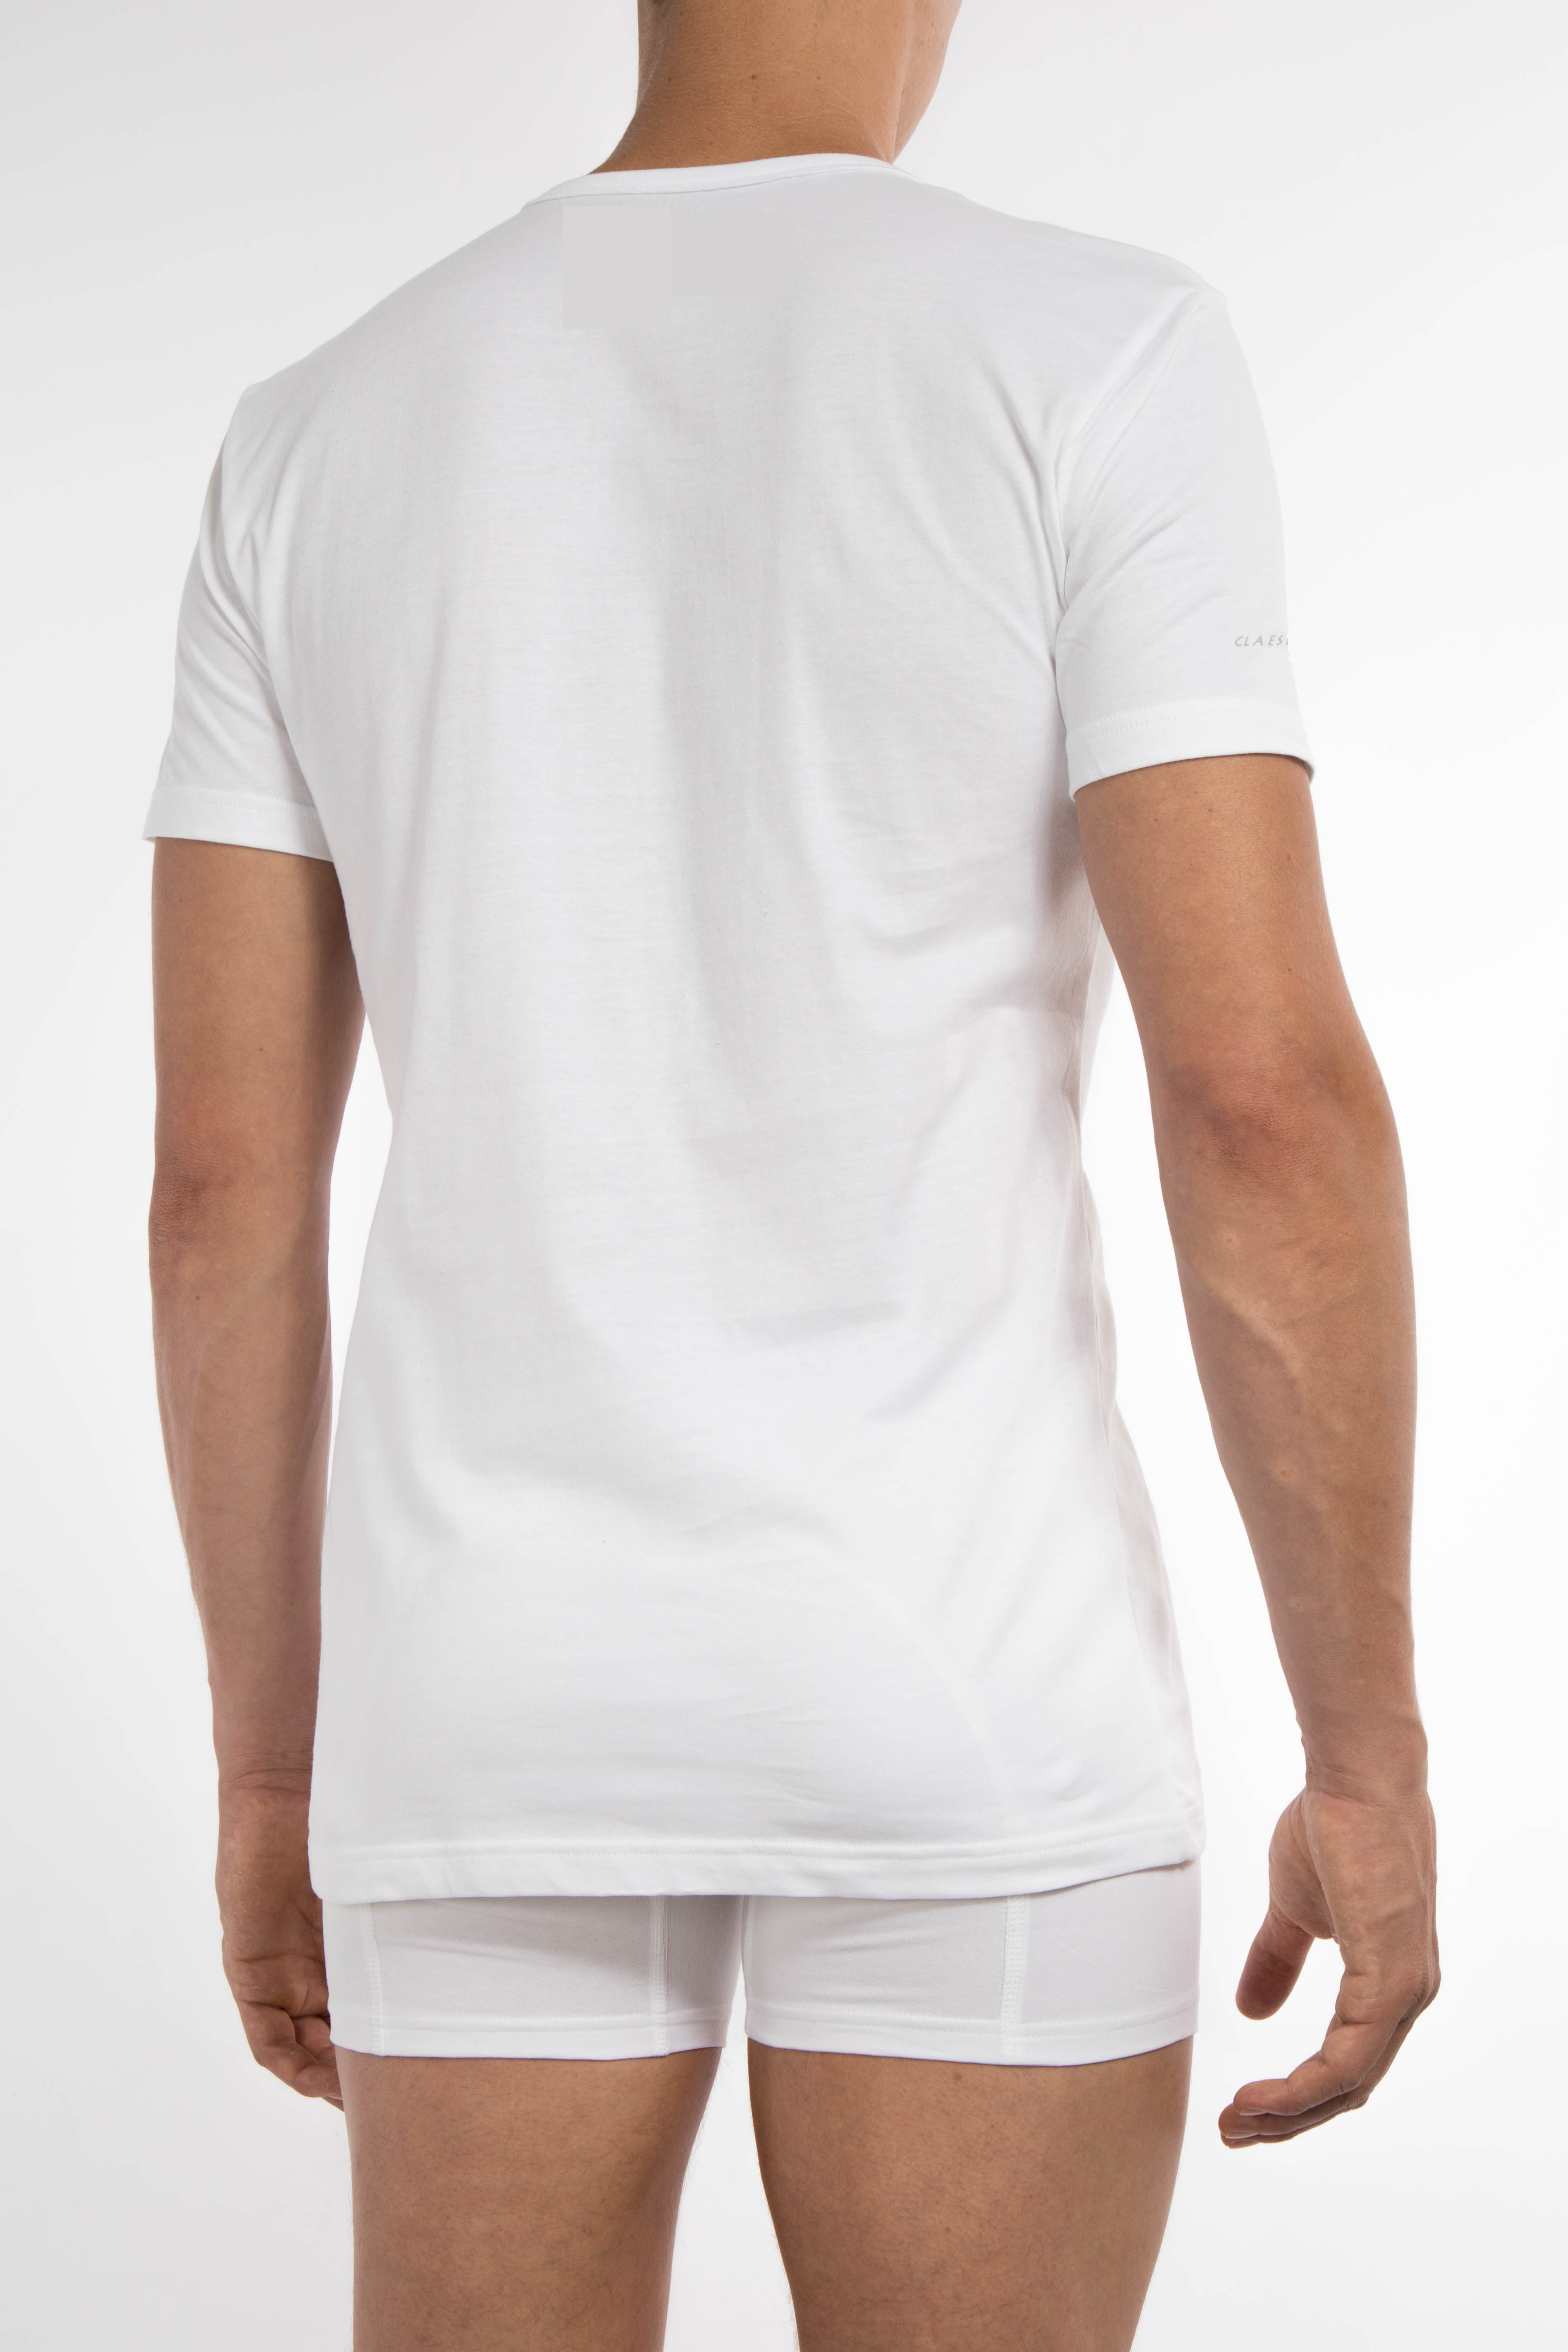 T Shirt KM White 2 pack